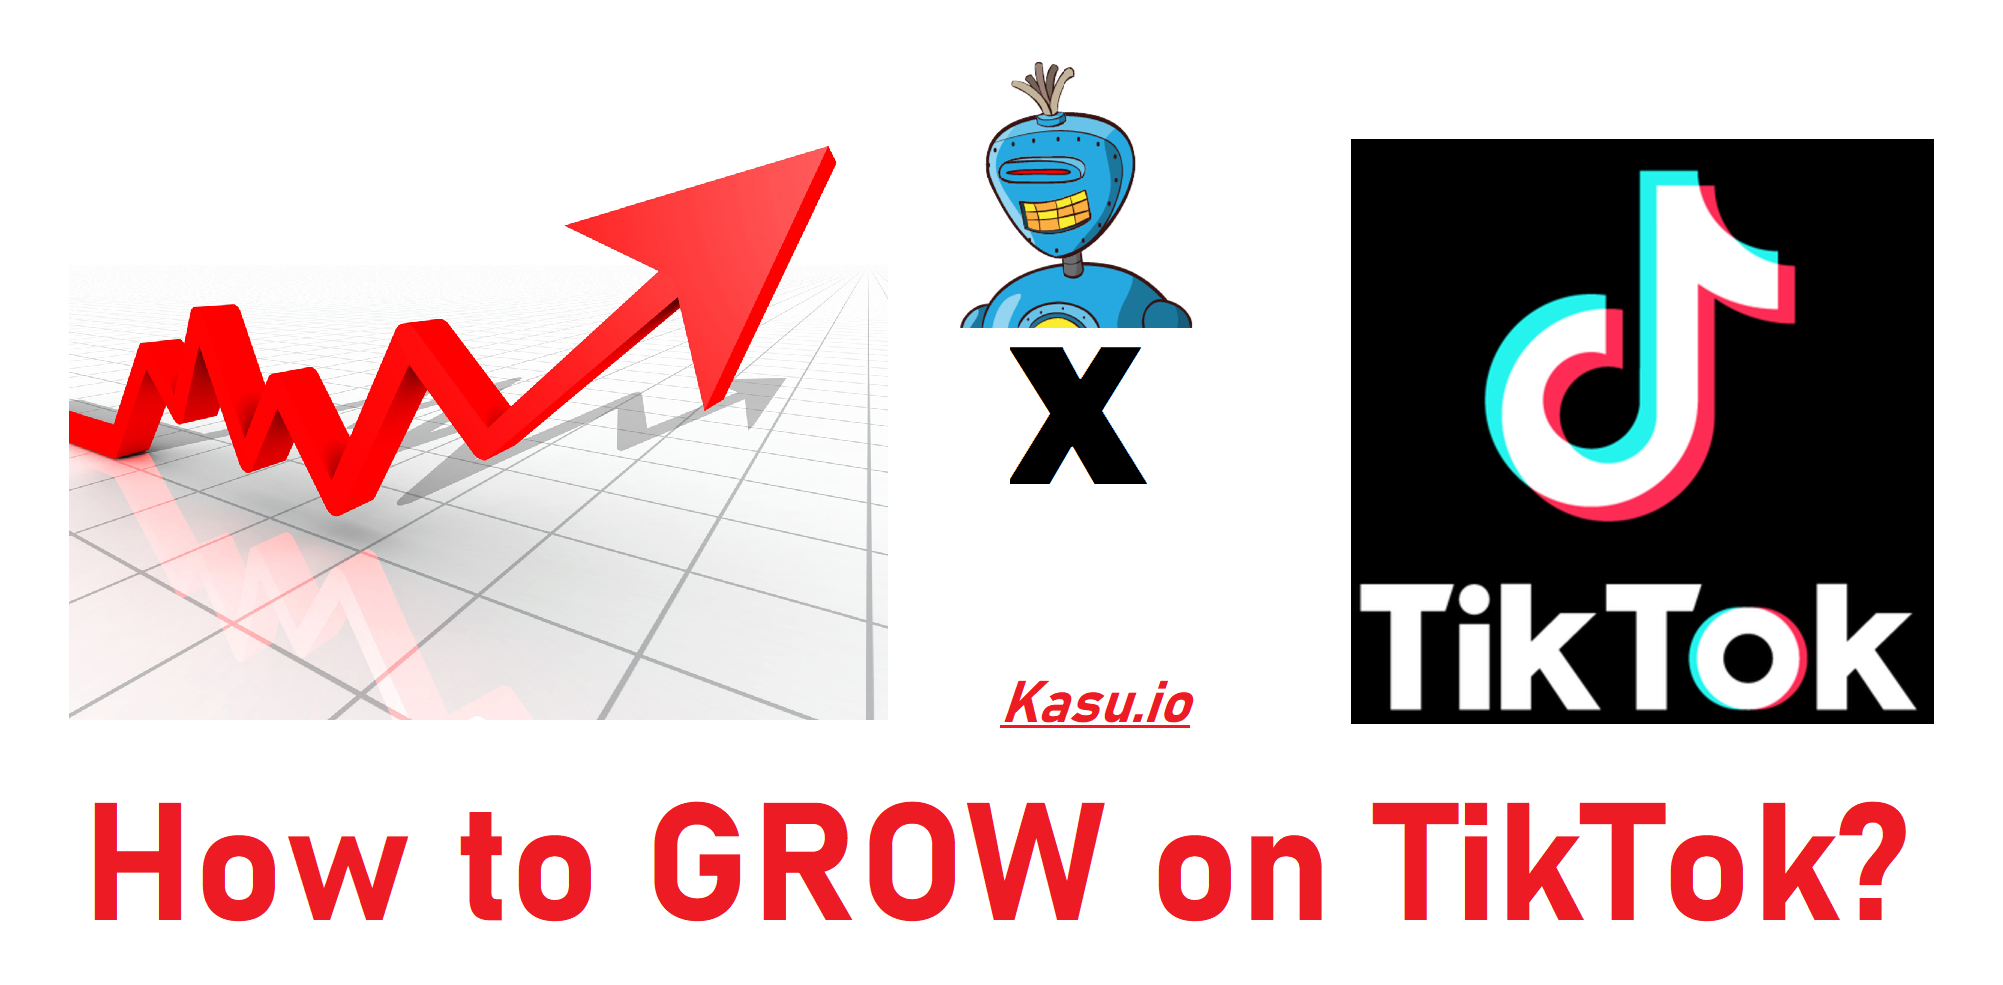 How to Grow on TikTok?